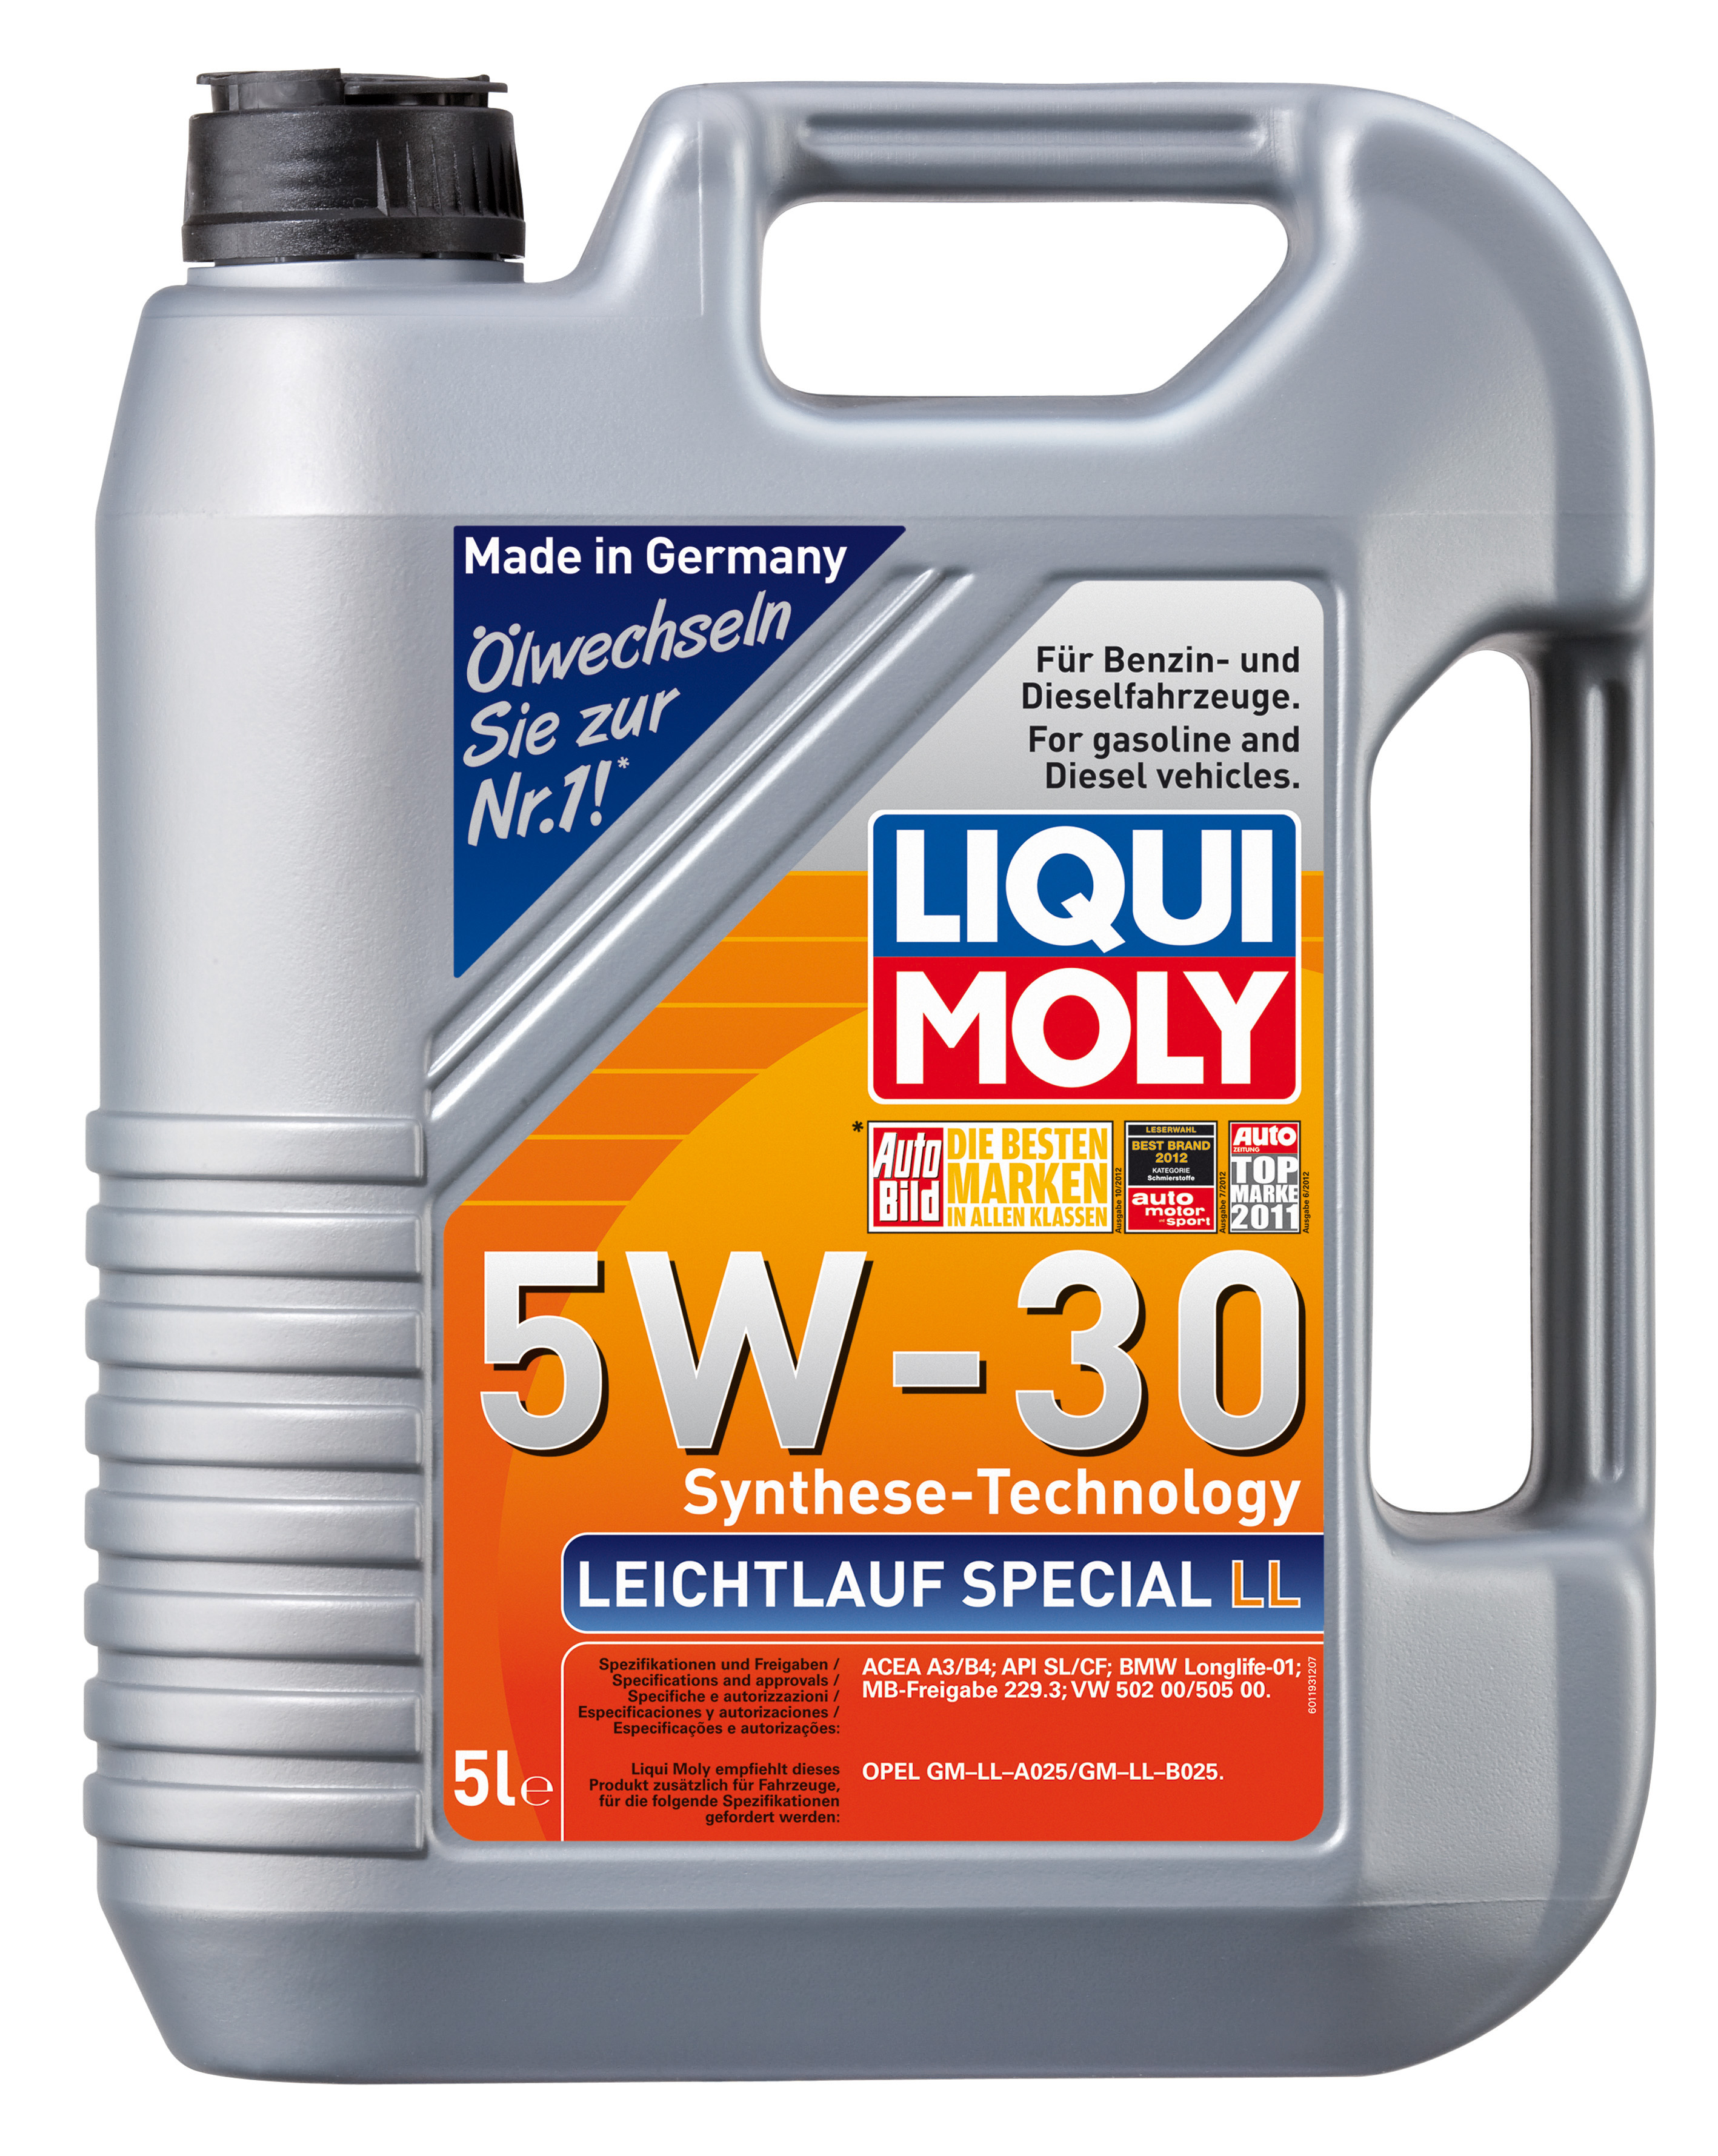 Моторное масло ликви моли 5w30. Liqui Moly 5w30 Special Tec 5л. Liqui Moly SAE 5w-30. 8055 Liqui Moly Special Tec ll 5w30 CF/SL а3/в4 5л синтетическое. Leichtlauf Special ll 5w-30.